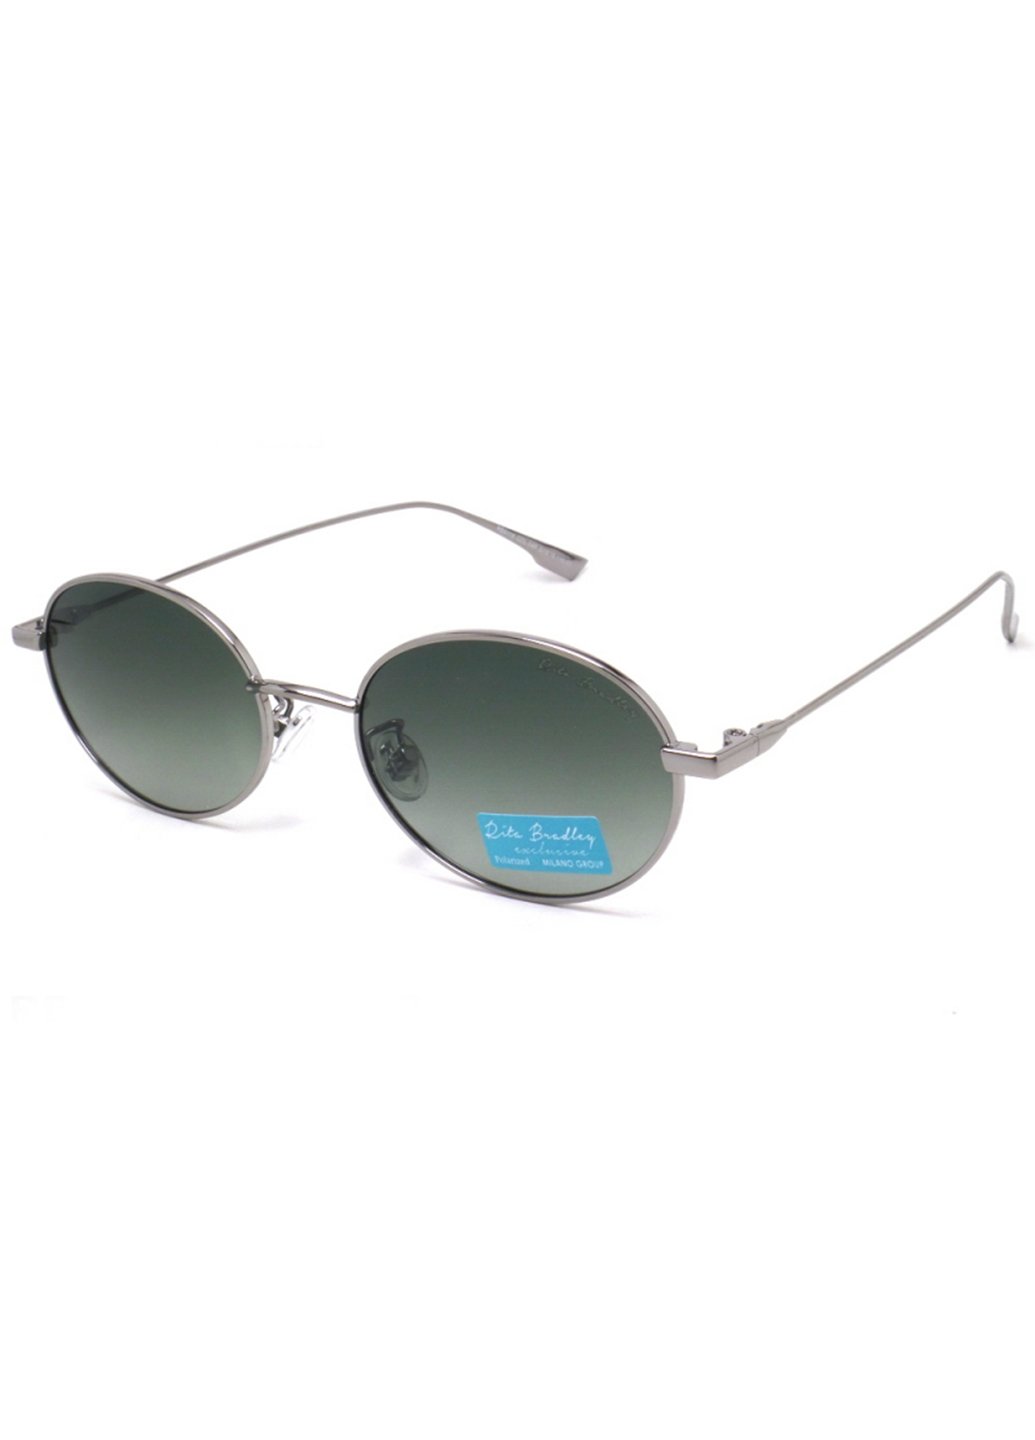 Купить Женские солнцезащитные очки Rita Bradley с поляризацией RB8115 112016 в интернет-магазине